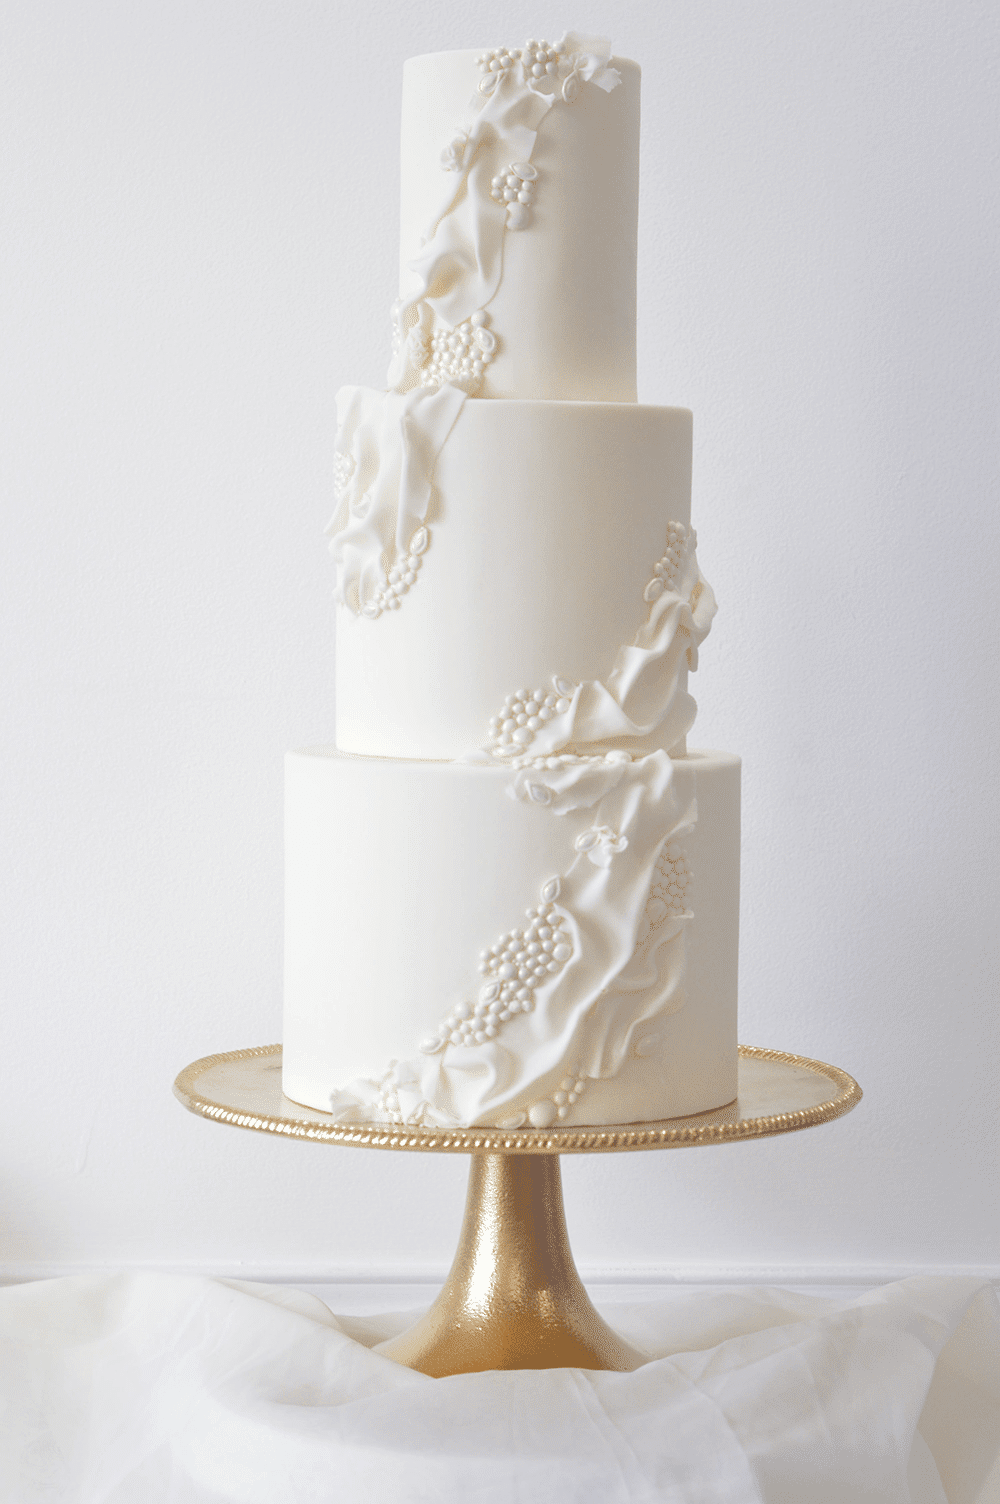 White wedding cake textures